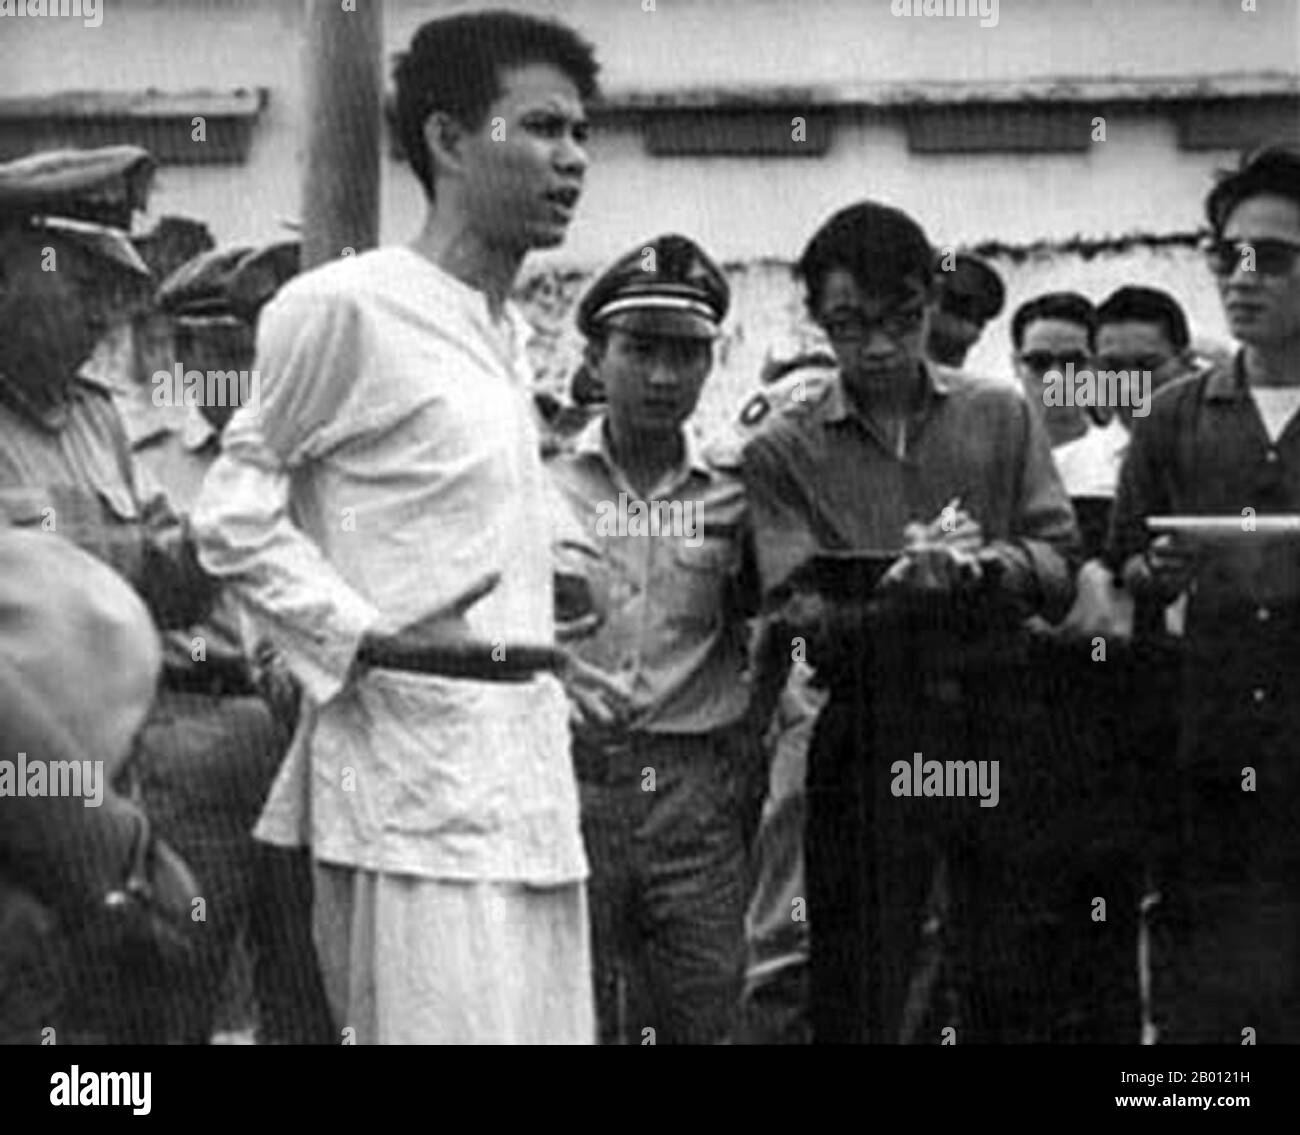 Vietnam: Nguyen Van Troi (1947-1964), NLF Fighter, in procinto di essere giustiziato, Saigon, 15 ottobre 1964. Nguyen Van Troi (1947 – 15 ottobre 1964) è stato un . Divenne noto dopo essere stato catturato dal Vietnam del Sud quando tentò di assassinare il Segretario della Difesa degli Stati Uniti Robert McNamara e il futuro ambasciatore Henry Cabot Lodge, Jr. Che stavano visitando il Vietnam del Sud nel maggio 1963. Fu giustiziato da una squadra di 17 anni. La sua esecuzione è stata filmata, e lui è rimasto infefatto fino alla fine. Le sue ultime parole come i colpi sono stati sparati erano 'Long Live Vietnam!'. Foto Stock